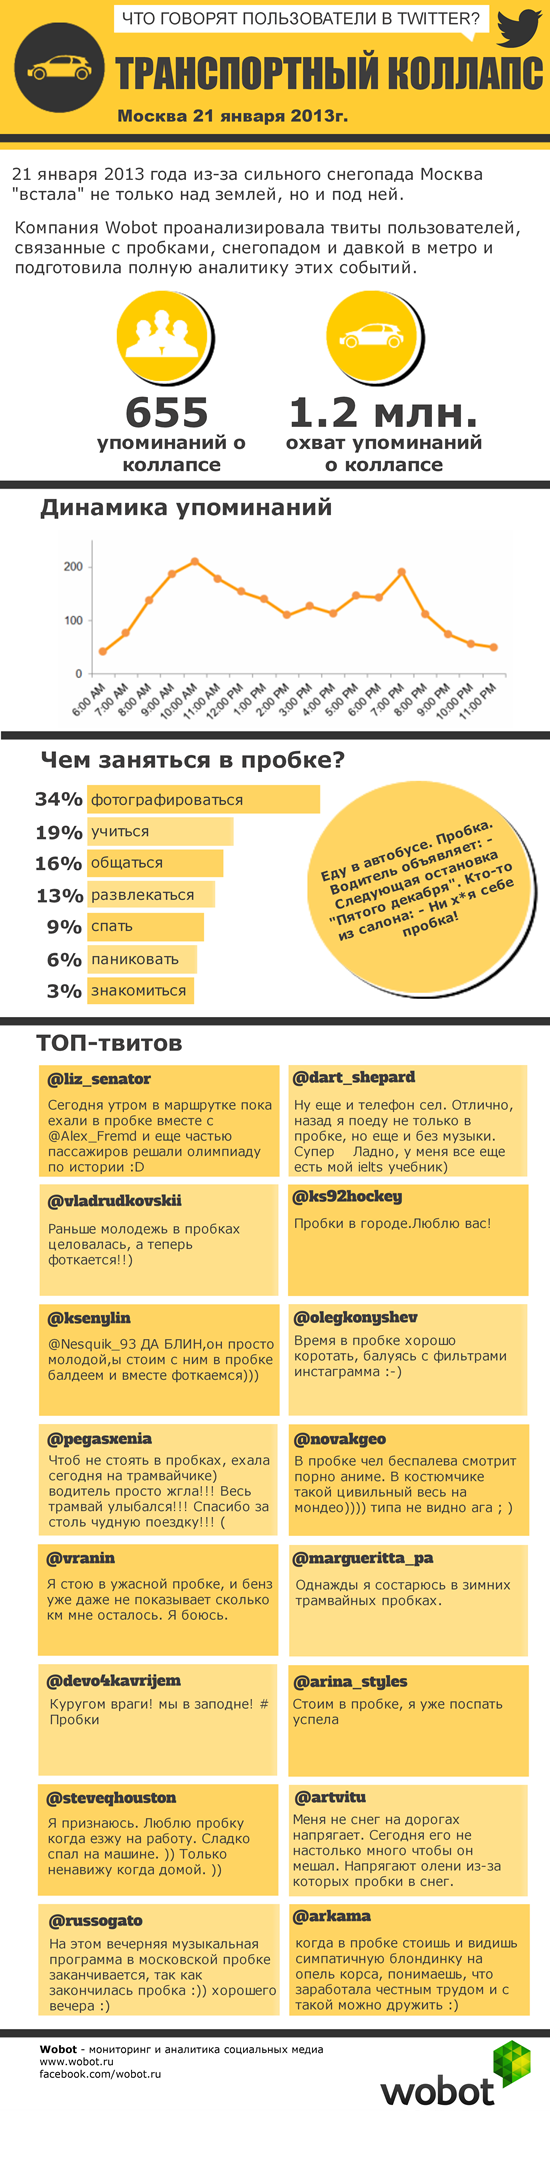 Инфографика: о чем говорят пользователи Twitter, находясь в московских пробках